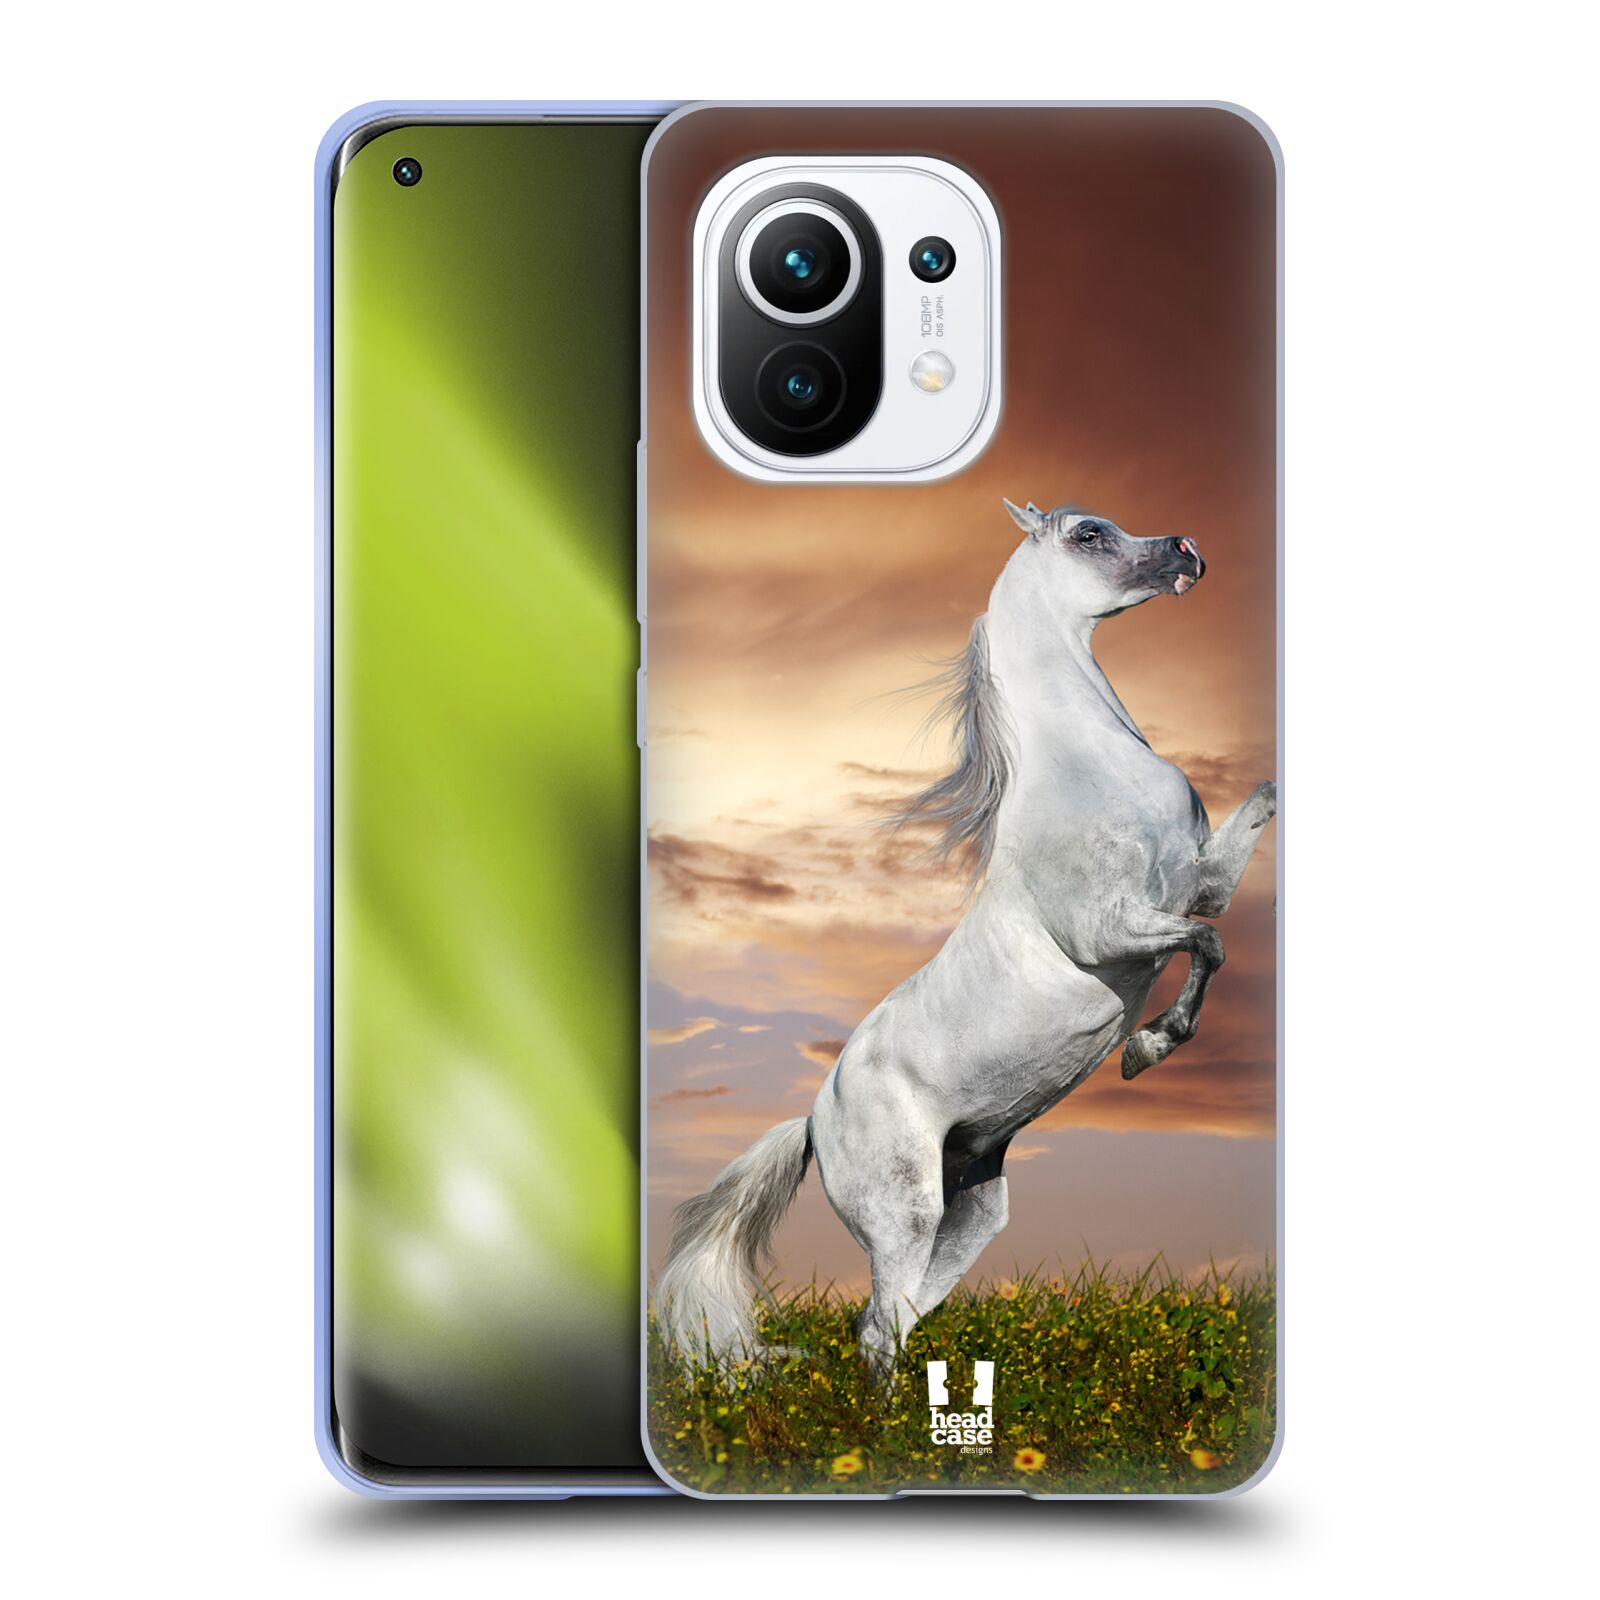 Plastový obal HEAD CASE na mobil Xiaomi Mi 11 vzor Divočina, Divoký život a zvířata foto DIVOKÝ KŮŇ MUSTANG BÍLÁ